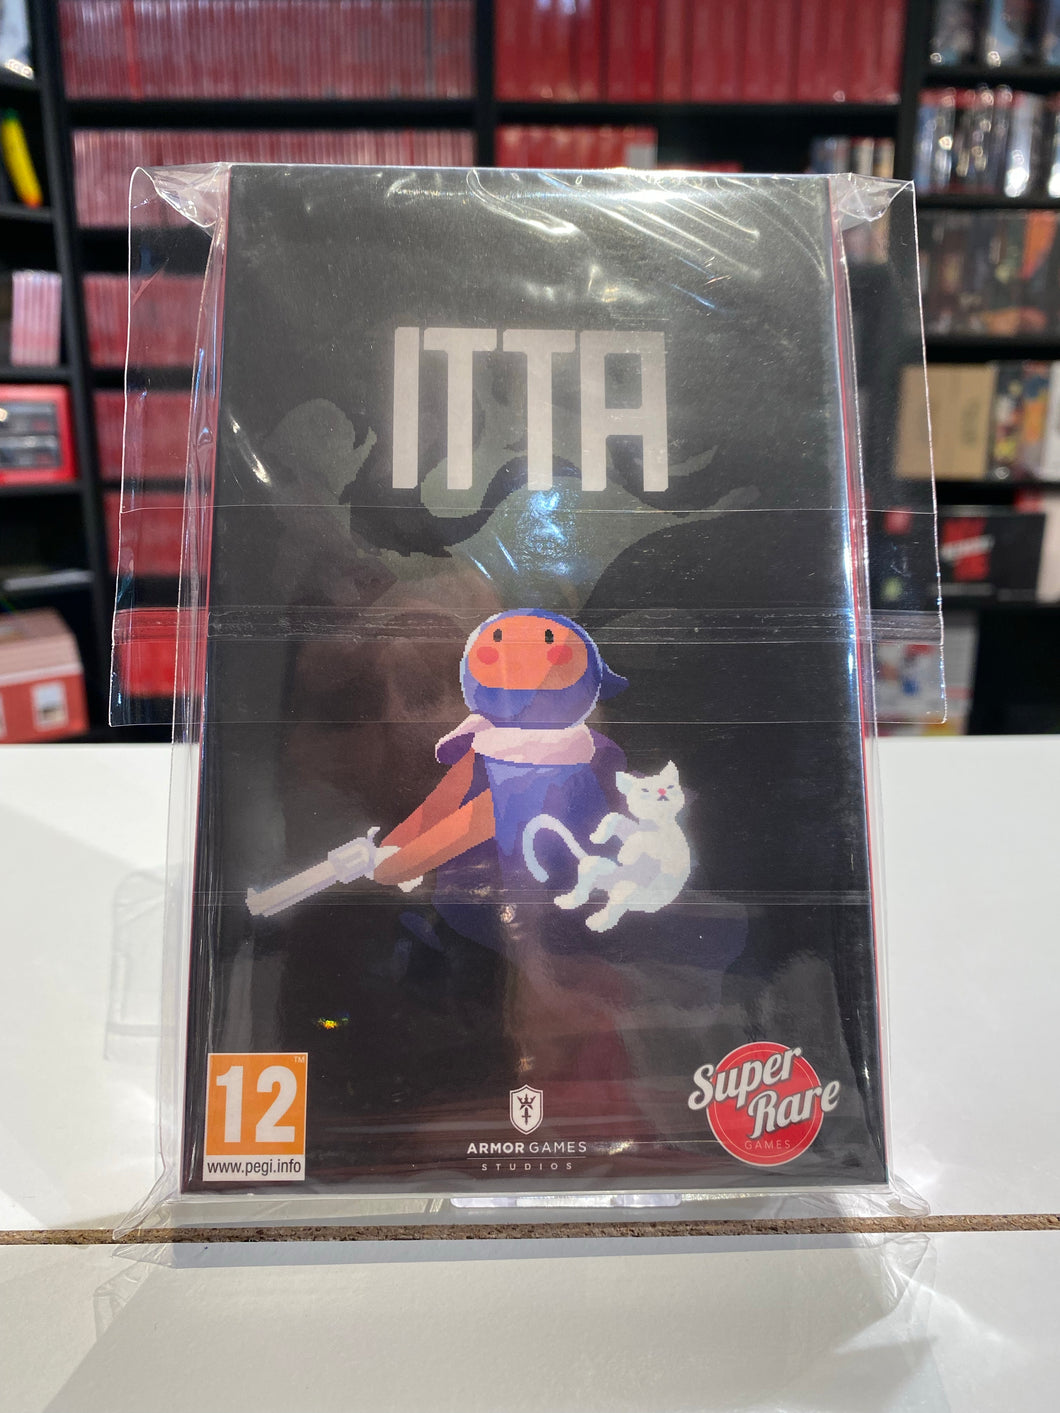 Itta / Super rare games / Switch / 3000 copies